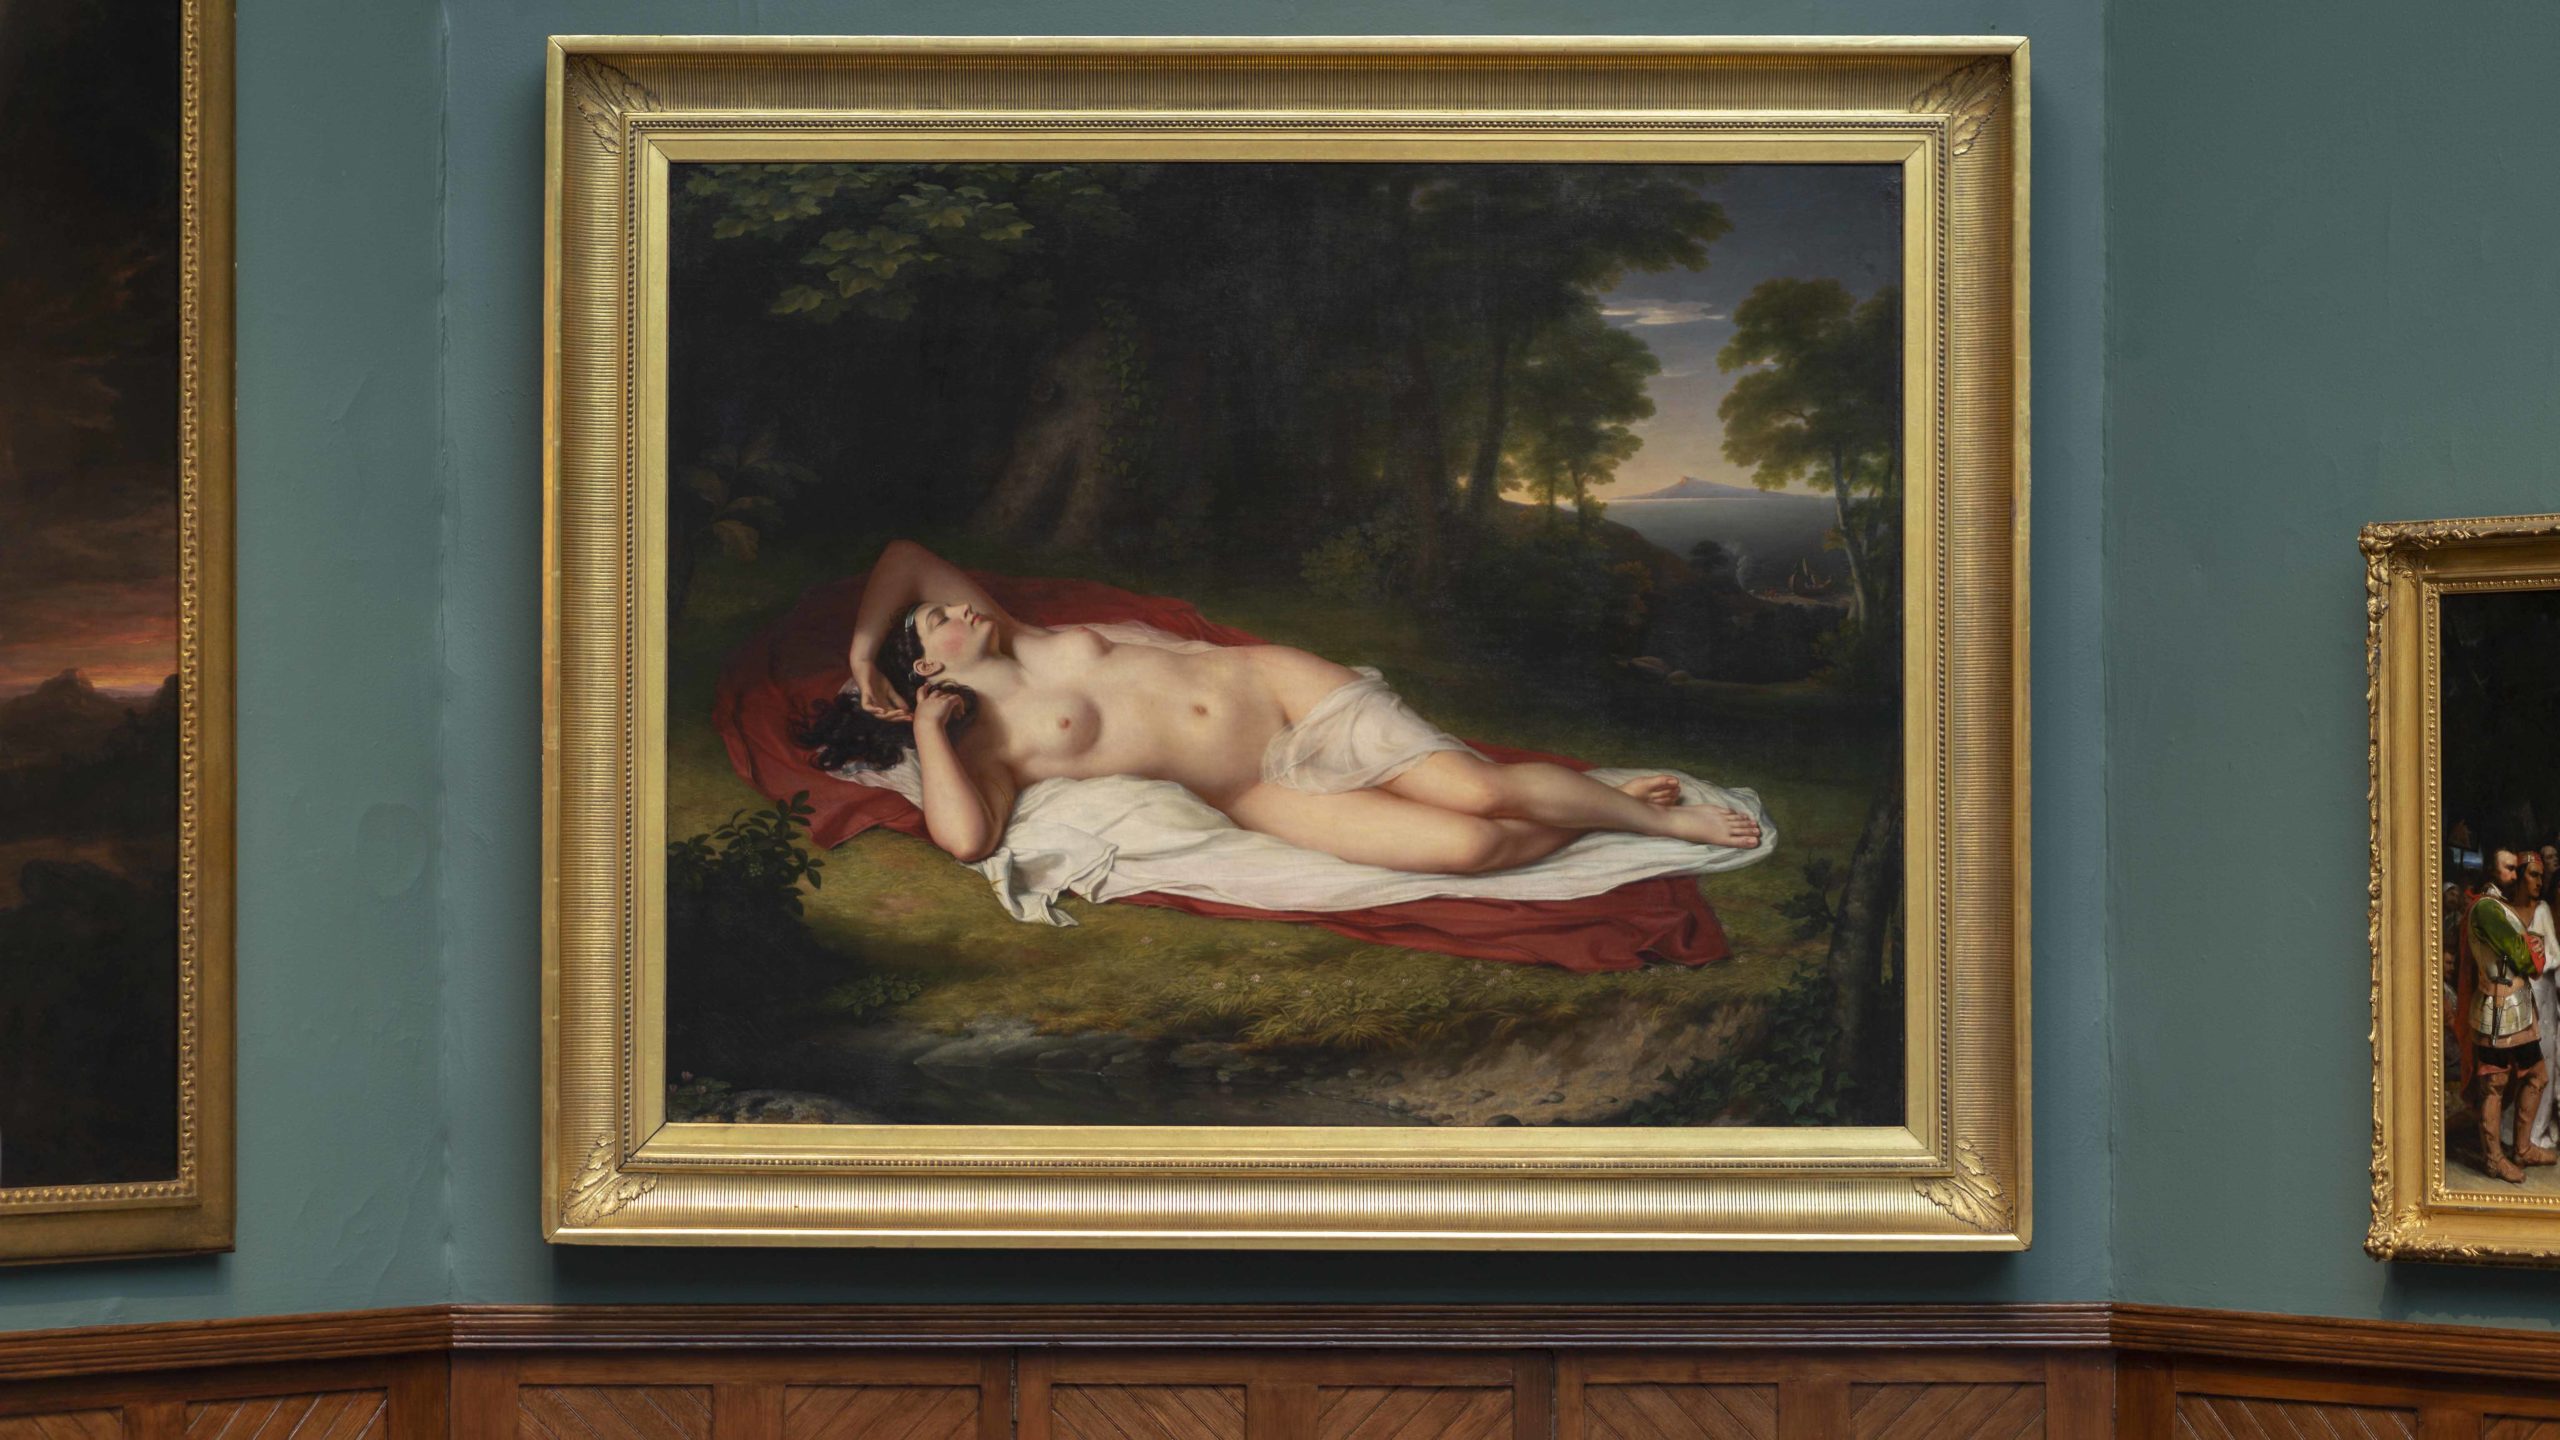 John Vanderlyn, Ariadne Asleep on the Island of Naxos, 1809–14, oil on canvas, 174.0 x 221.0 cm (The Pennsylvania Academy of the Fine Arts)